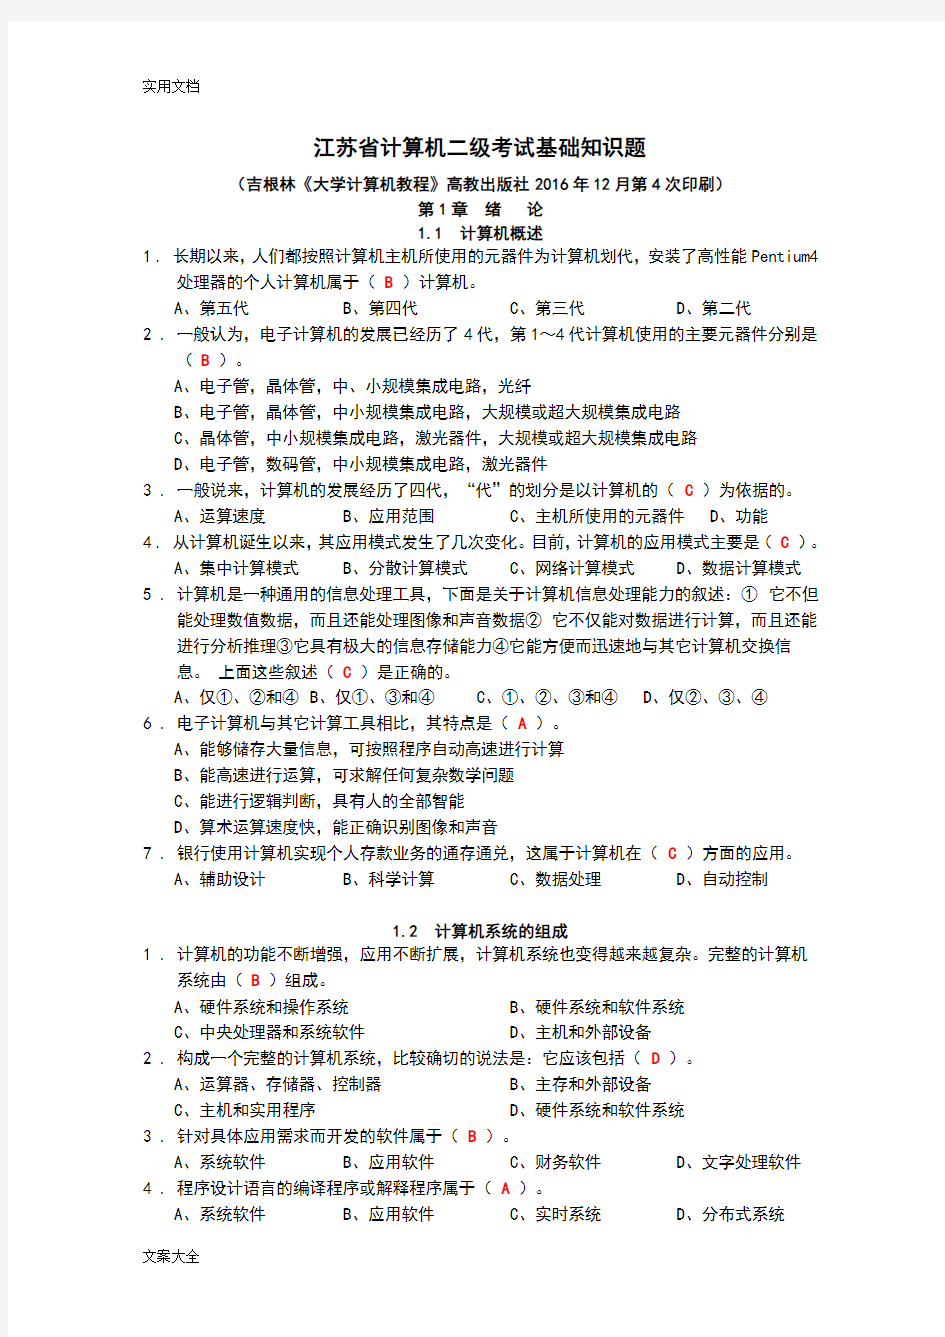 江苏省计算机二级考试基础知识题